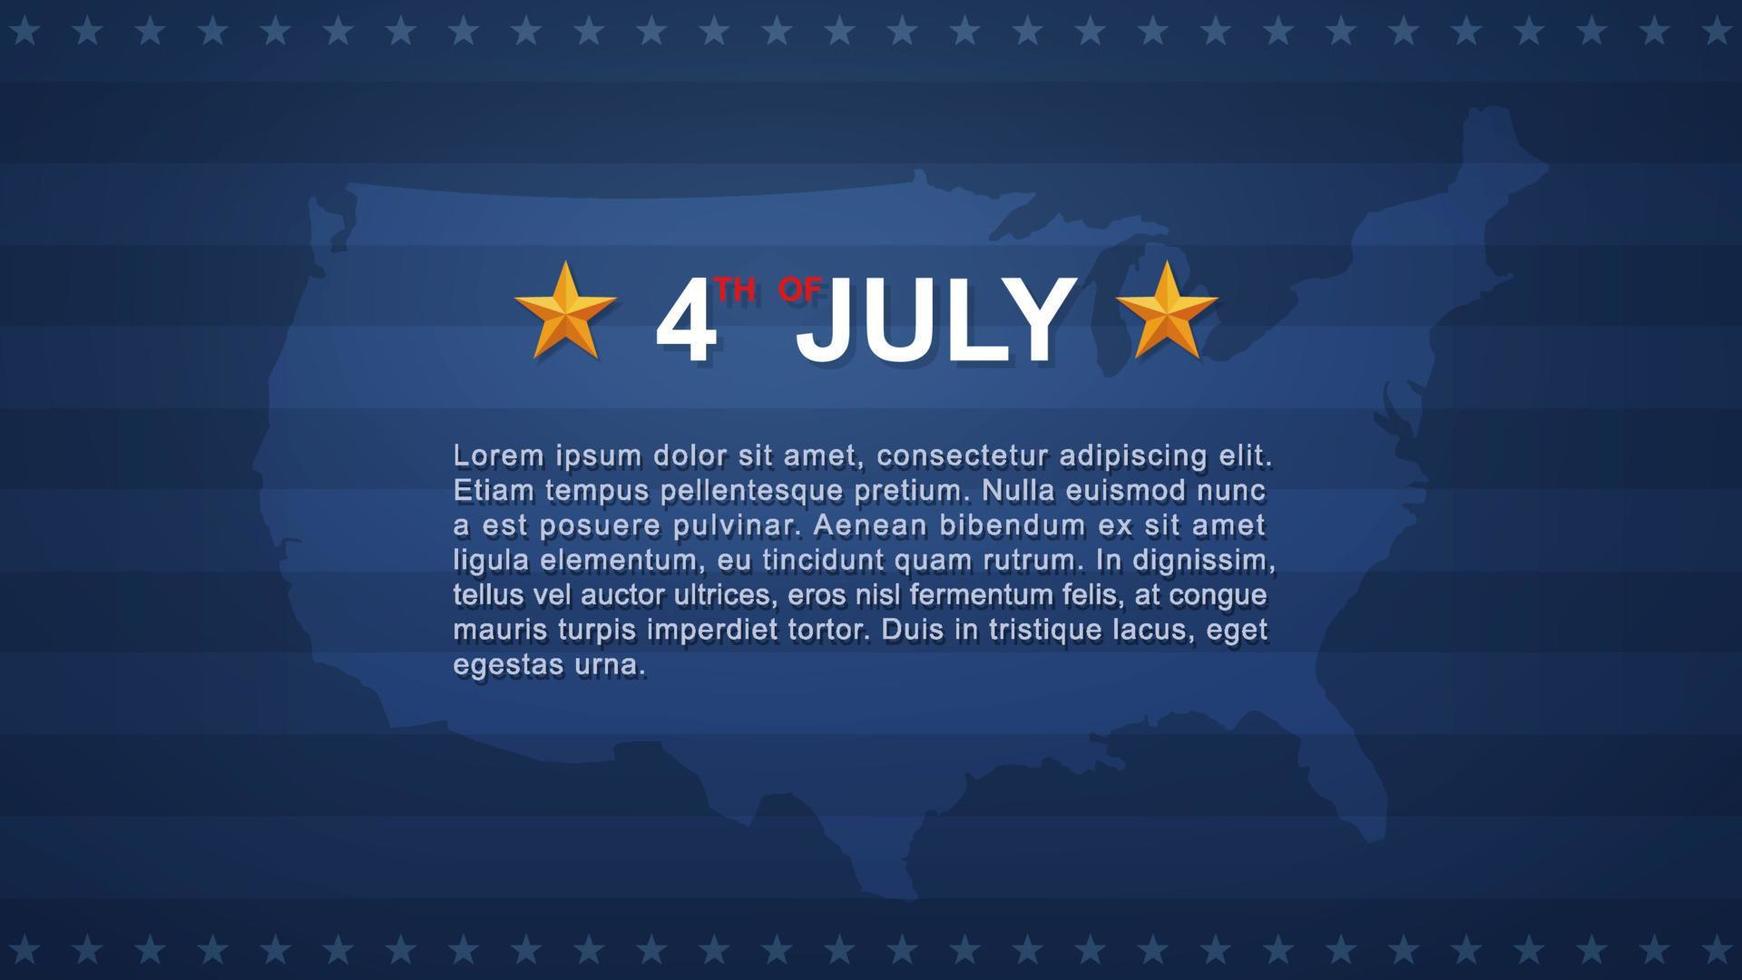 4 de julho de fundo para o dia da independência dos eua com fundo azul e bandeira americana. vetor. vetor